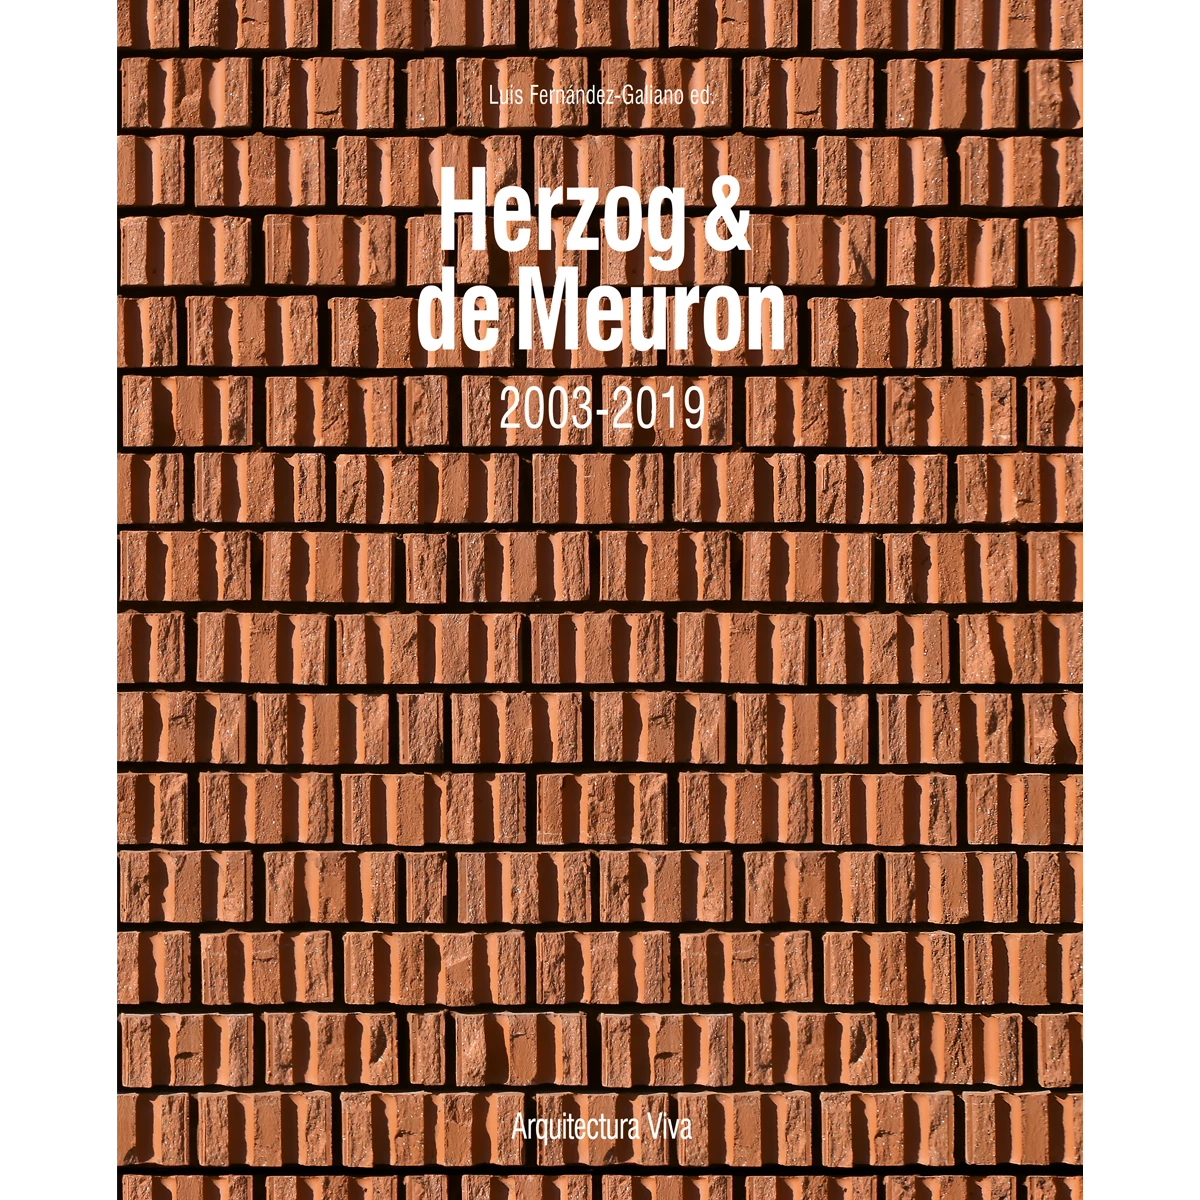 Herzog & de Meuron 2003-2019